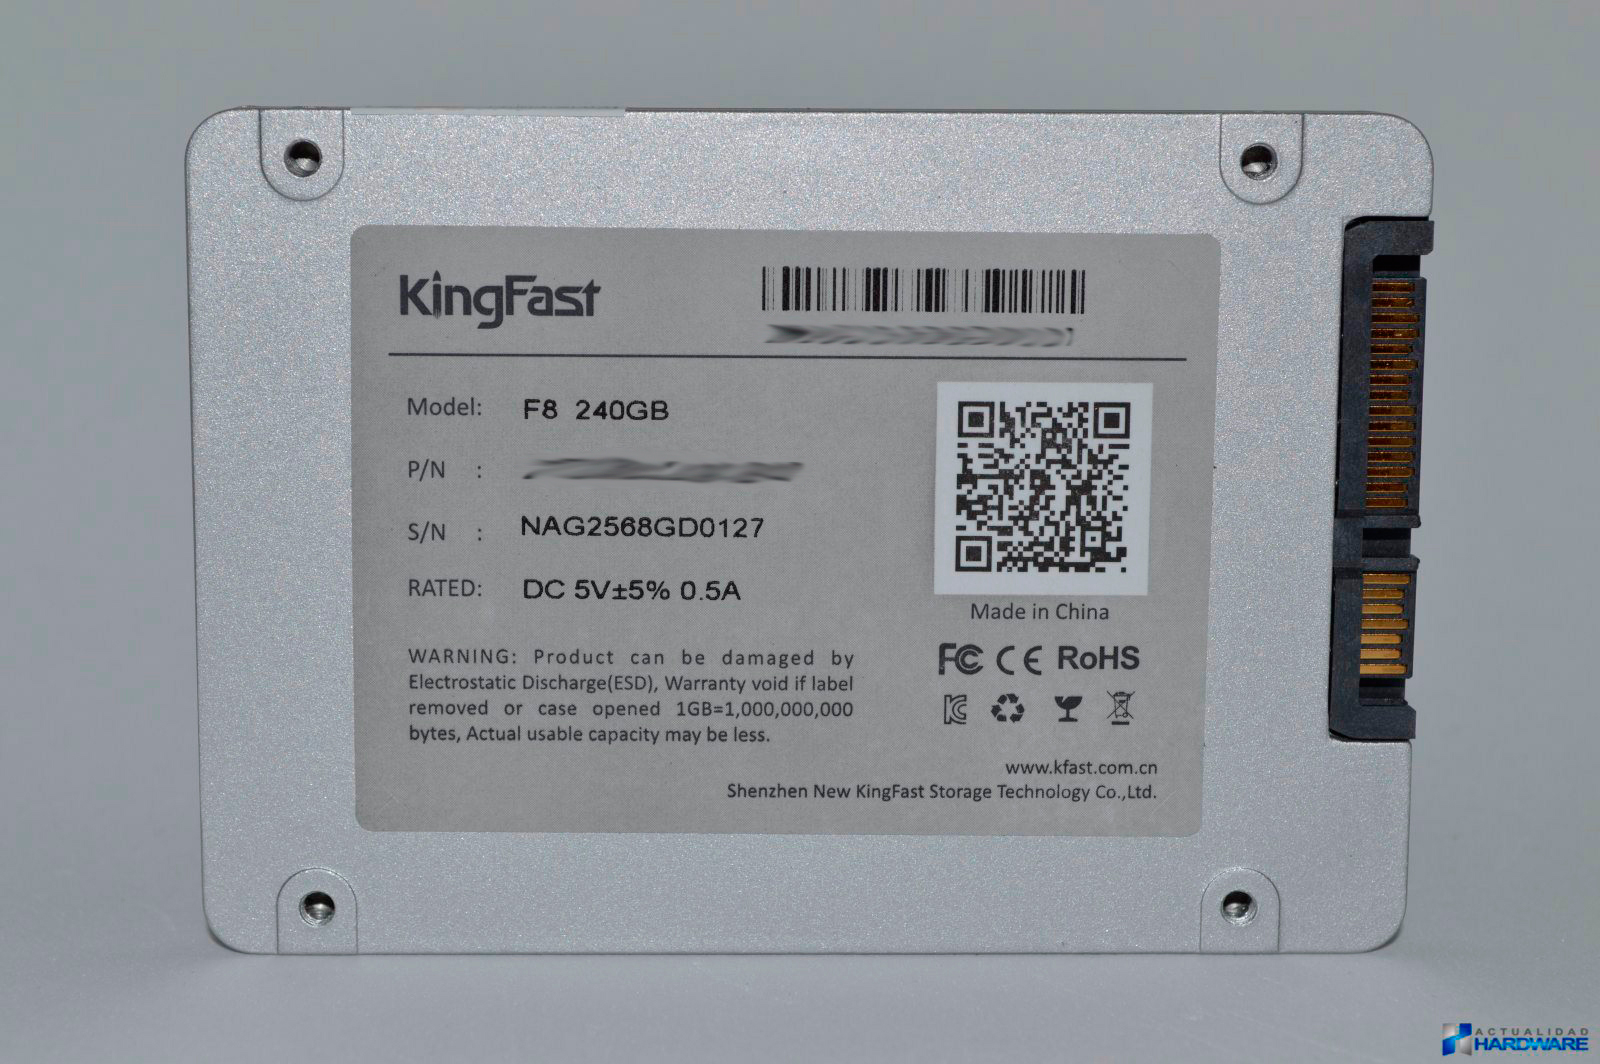 REVIEW: KINGFAST F8 SSD 240GB